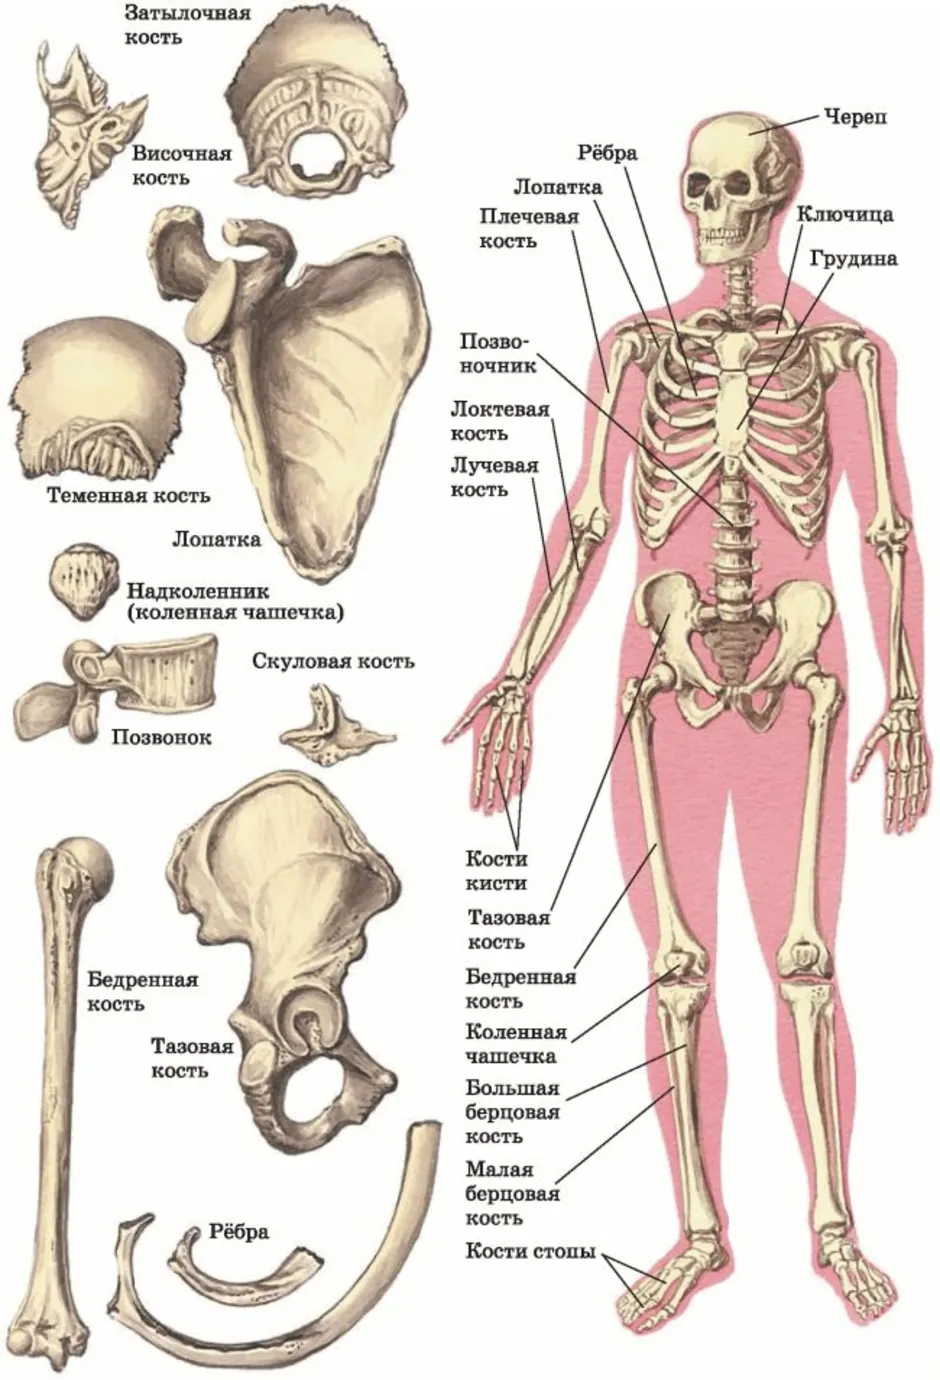 Подпишите названия костей скелета. Скелет человека с описанием костей. Название частей кости человека. Строение костей человека с названиями. Название костей скелета туловища.